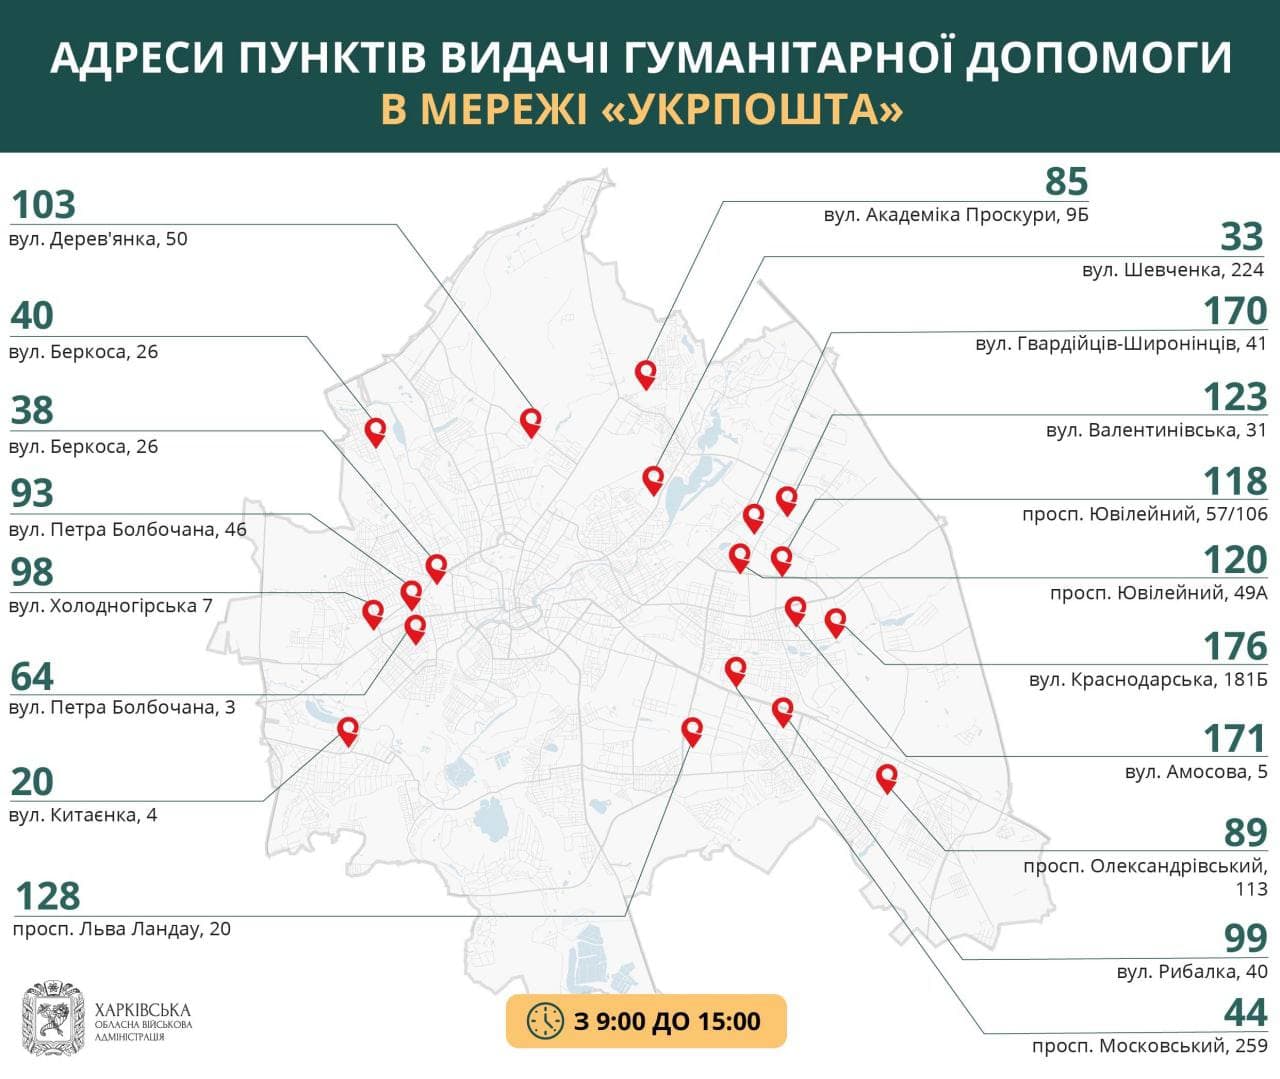 Выдача гуманитарной помощь Укрпочта (карта)